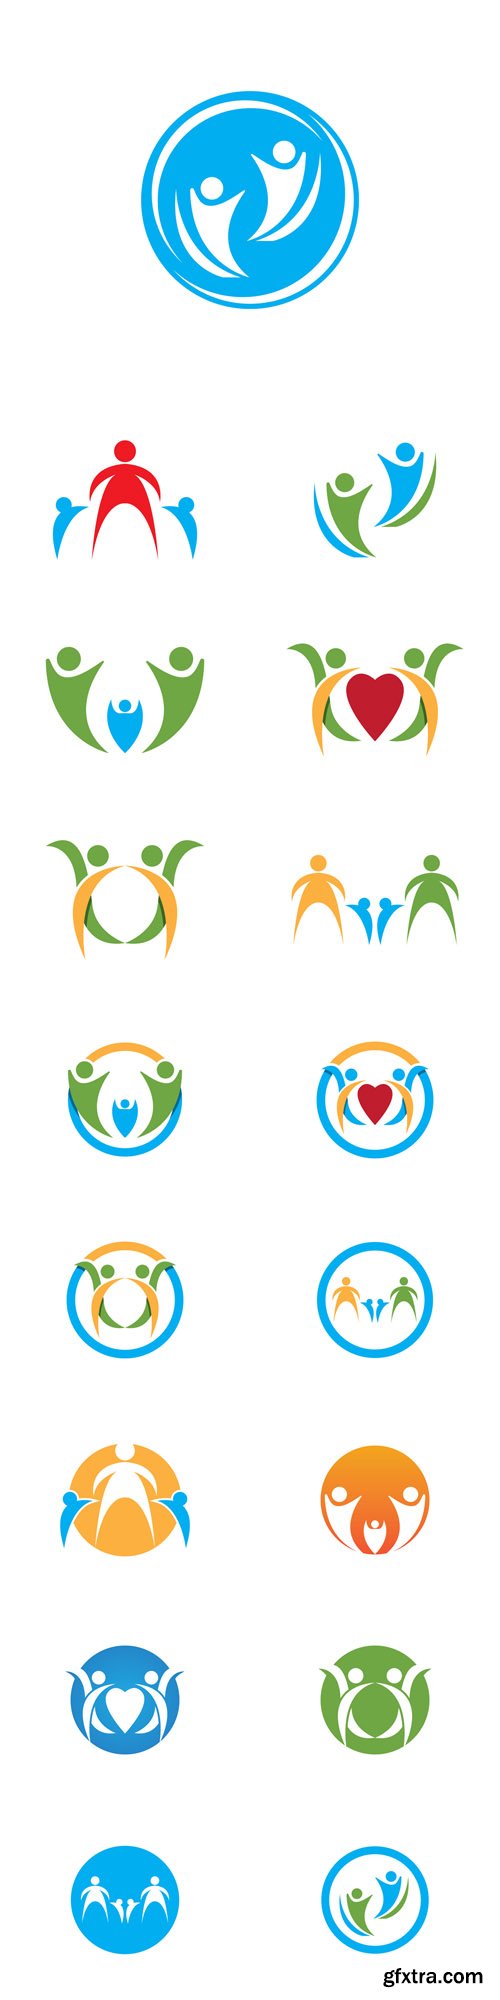 Vector Set - Health Care Logos